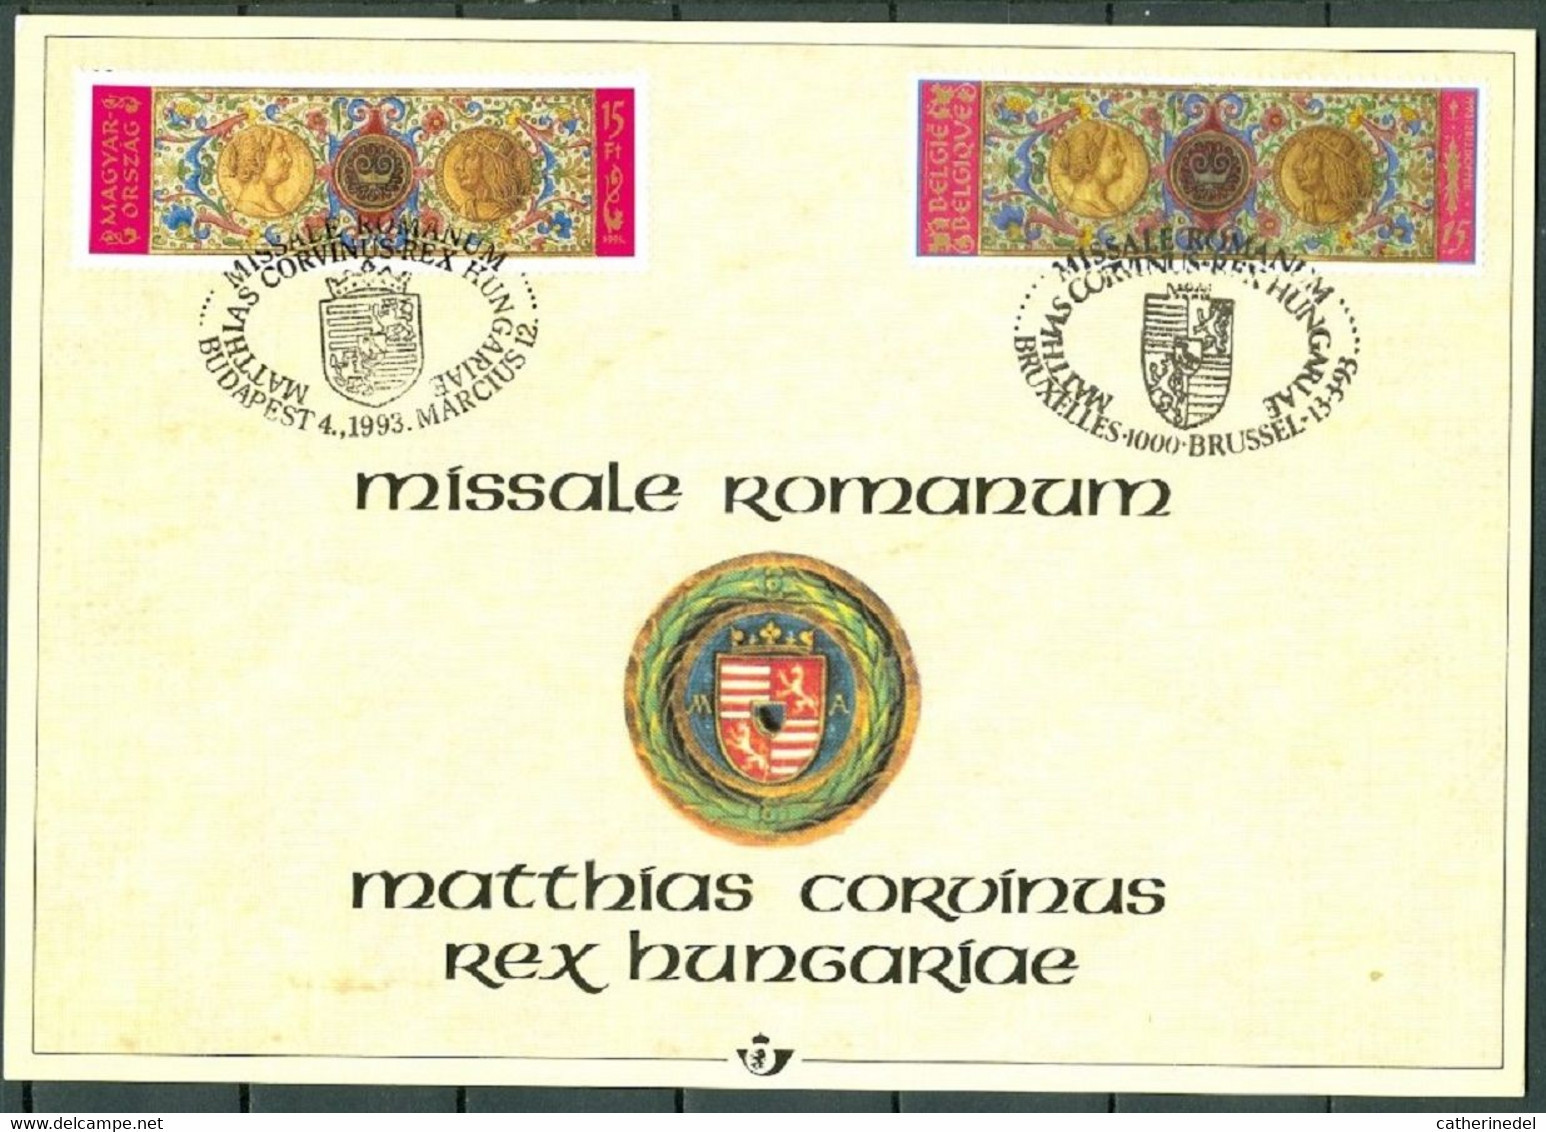 Année 1993 : Carte Souvenir 2492HK - Histoire - Missale Romanum - Erinnerungskarten – Gemeinschaftsausgaben [HK]